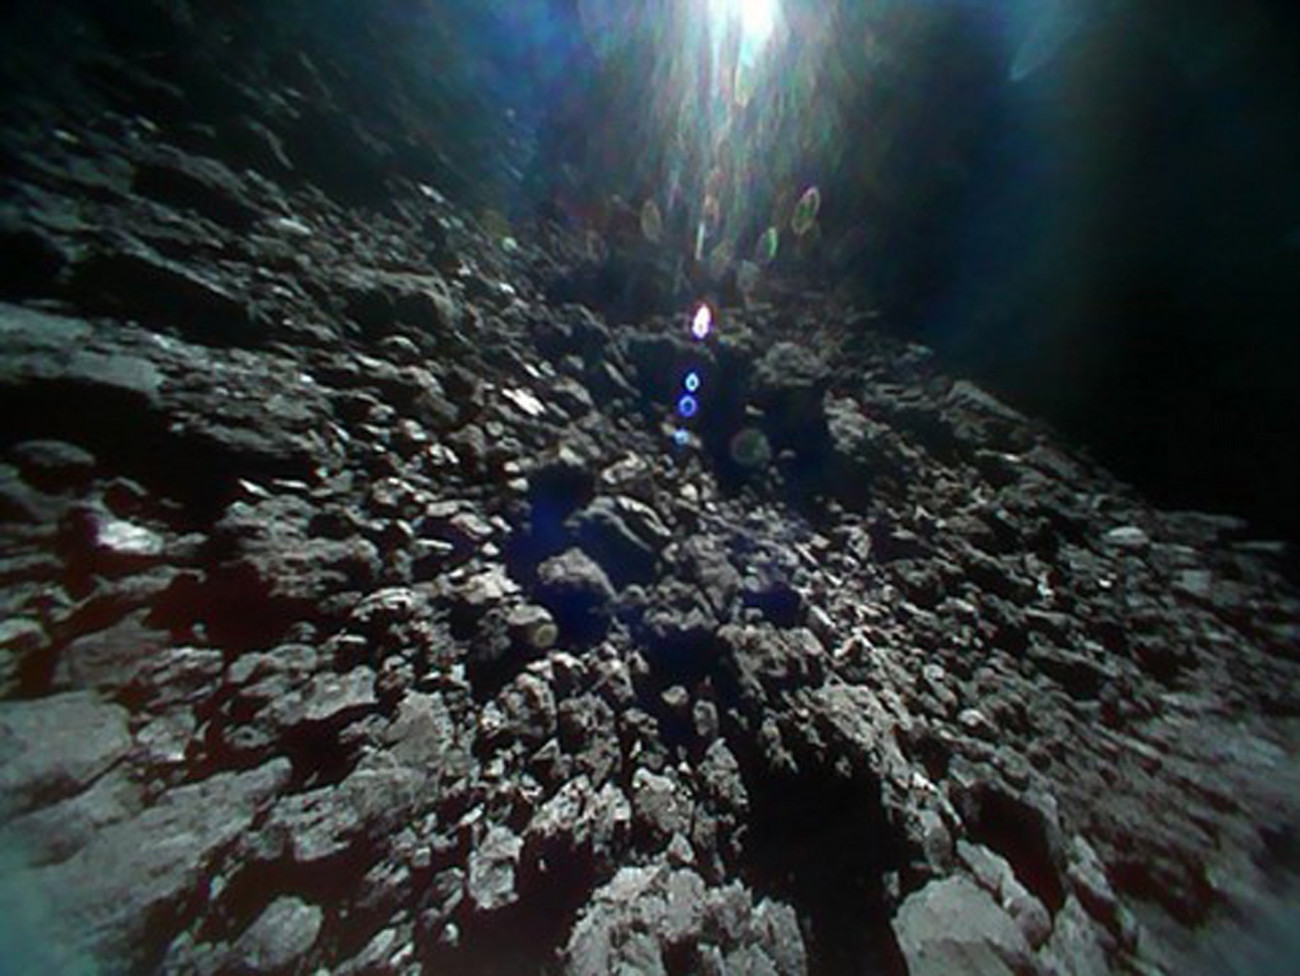 Világűr, 2018. szeptember 28.
A JAXA japán űrügynökség felvétele a Ryugu nevű kisbolygó felszínéről 2018. szeptember 23-án. A felvételt a Hajabusza-2 (Sólyom-2) aszteroidavizsgáló űrszondáról levált, Minerva-2 nevű, robotvezérlésű Rover1B kutatóműszer készítette. A 2014-ben útnak indított Hajabusza-2 űrszonda 2018. június 27-én érte el a Földtől mintegy 280 millió kilométerre levő, egy kilométer átmérőjű Ryugu aszteroidát. A kutatóroverek feladata, hogy felvételeket készítsenek az aszteroidáról, megmérjék a felszíni hőmérsékletét. A csillagászok szerint a Ryugu a Naprendszer hajnalán formálódhatott, így feltételezéseik szerint olyan szerves anyagokat tartalmazhat, amelyek a földi élet kialakulásához is hozzájárulhattak. (MTI/EPA/JAXA)